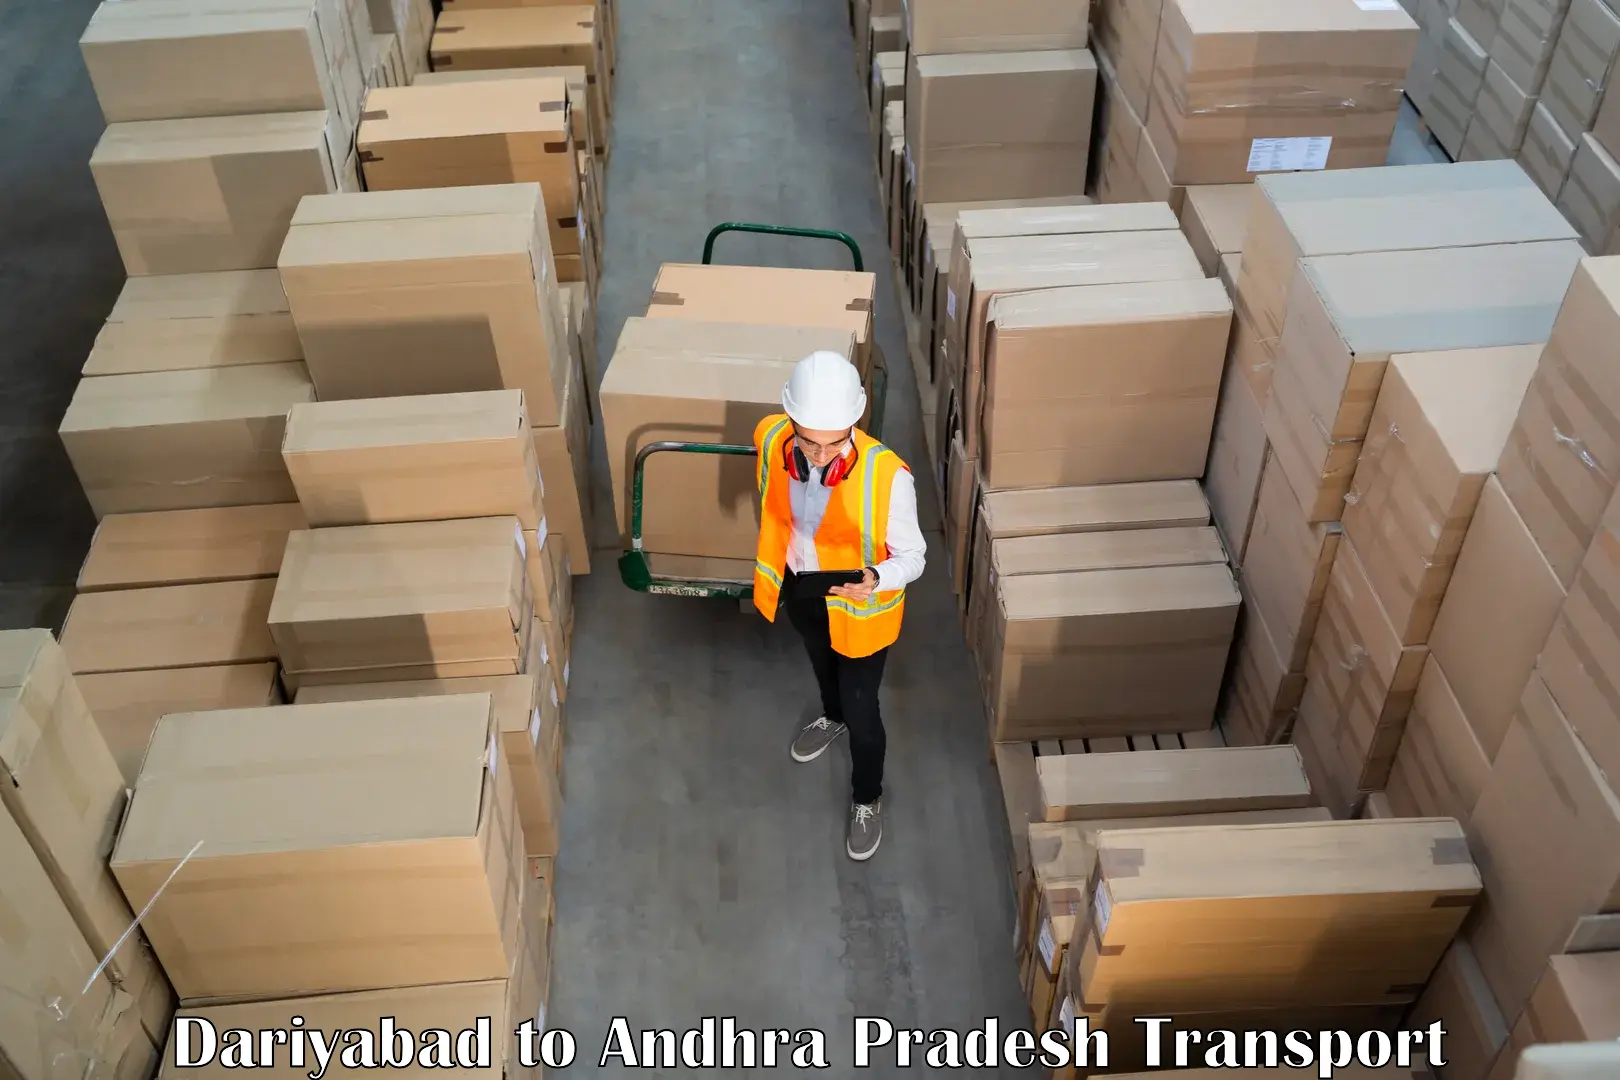 Furniture transport service Dariyabad to Andhra Pradesh